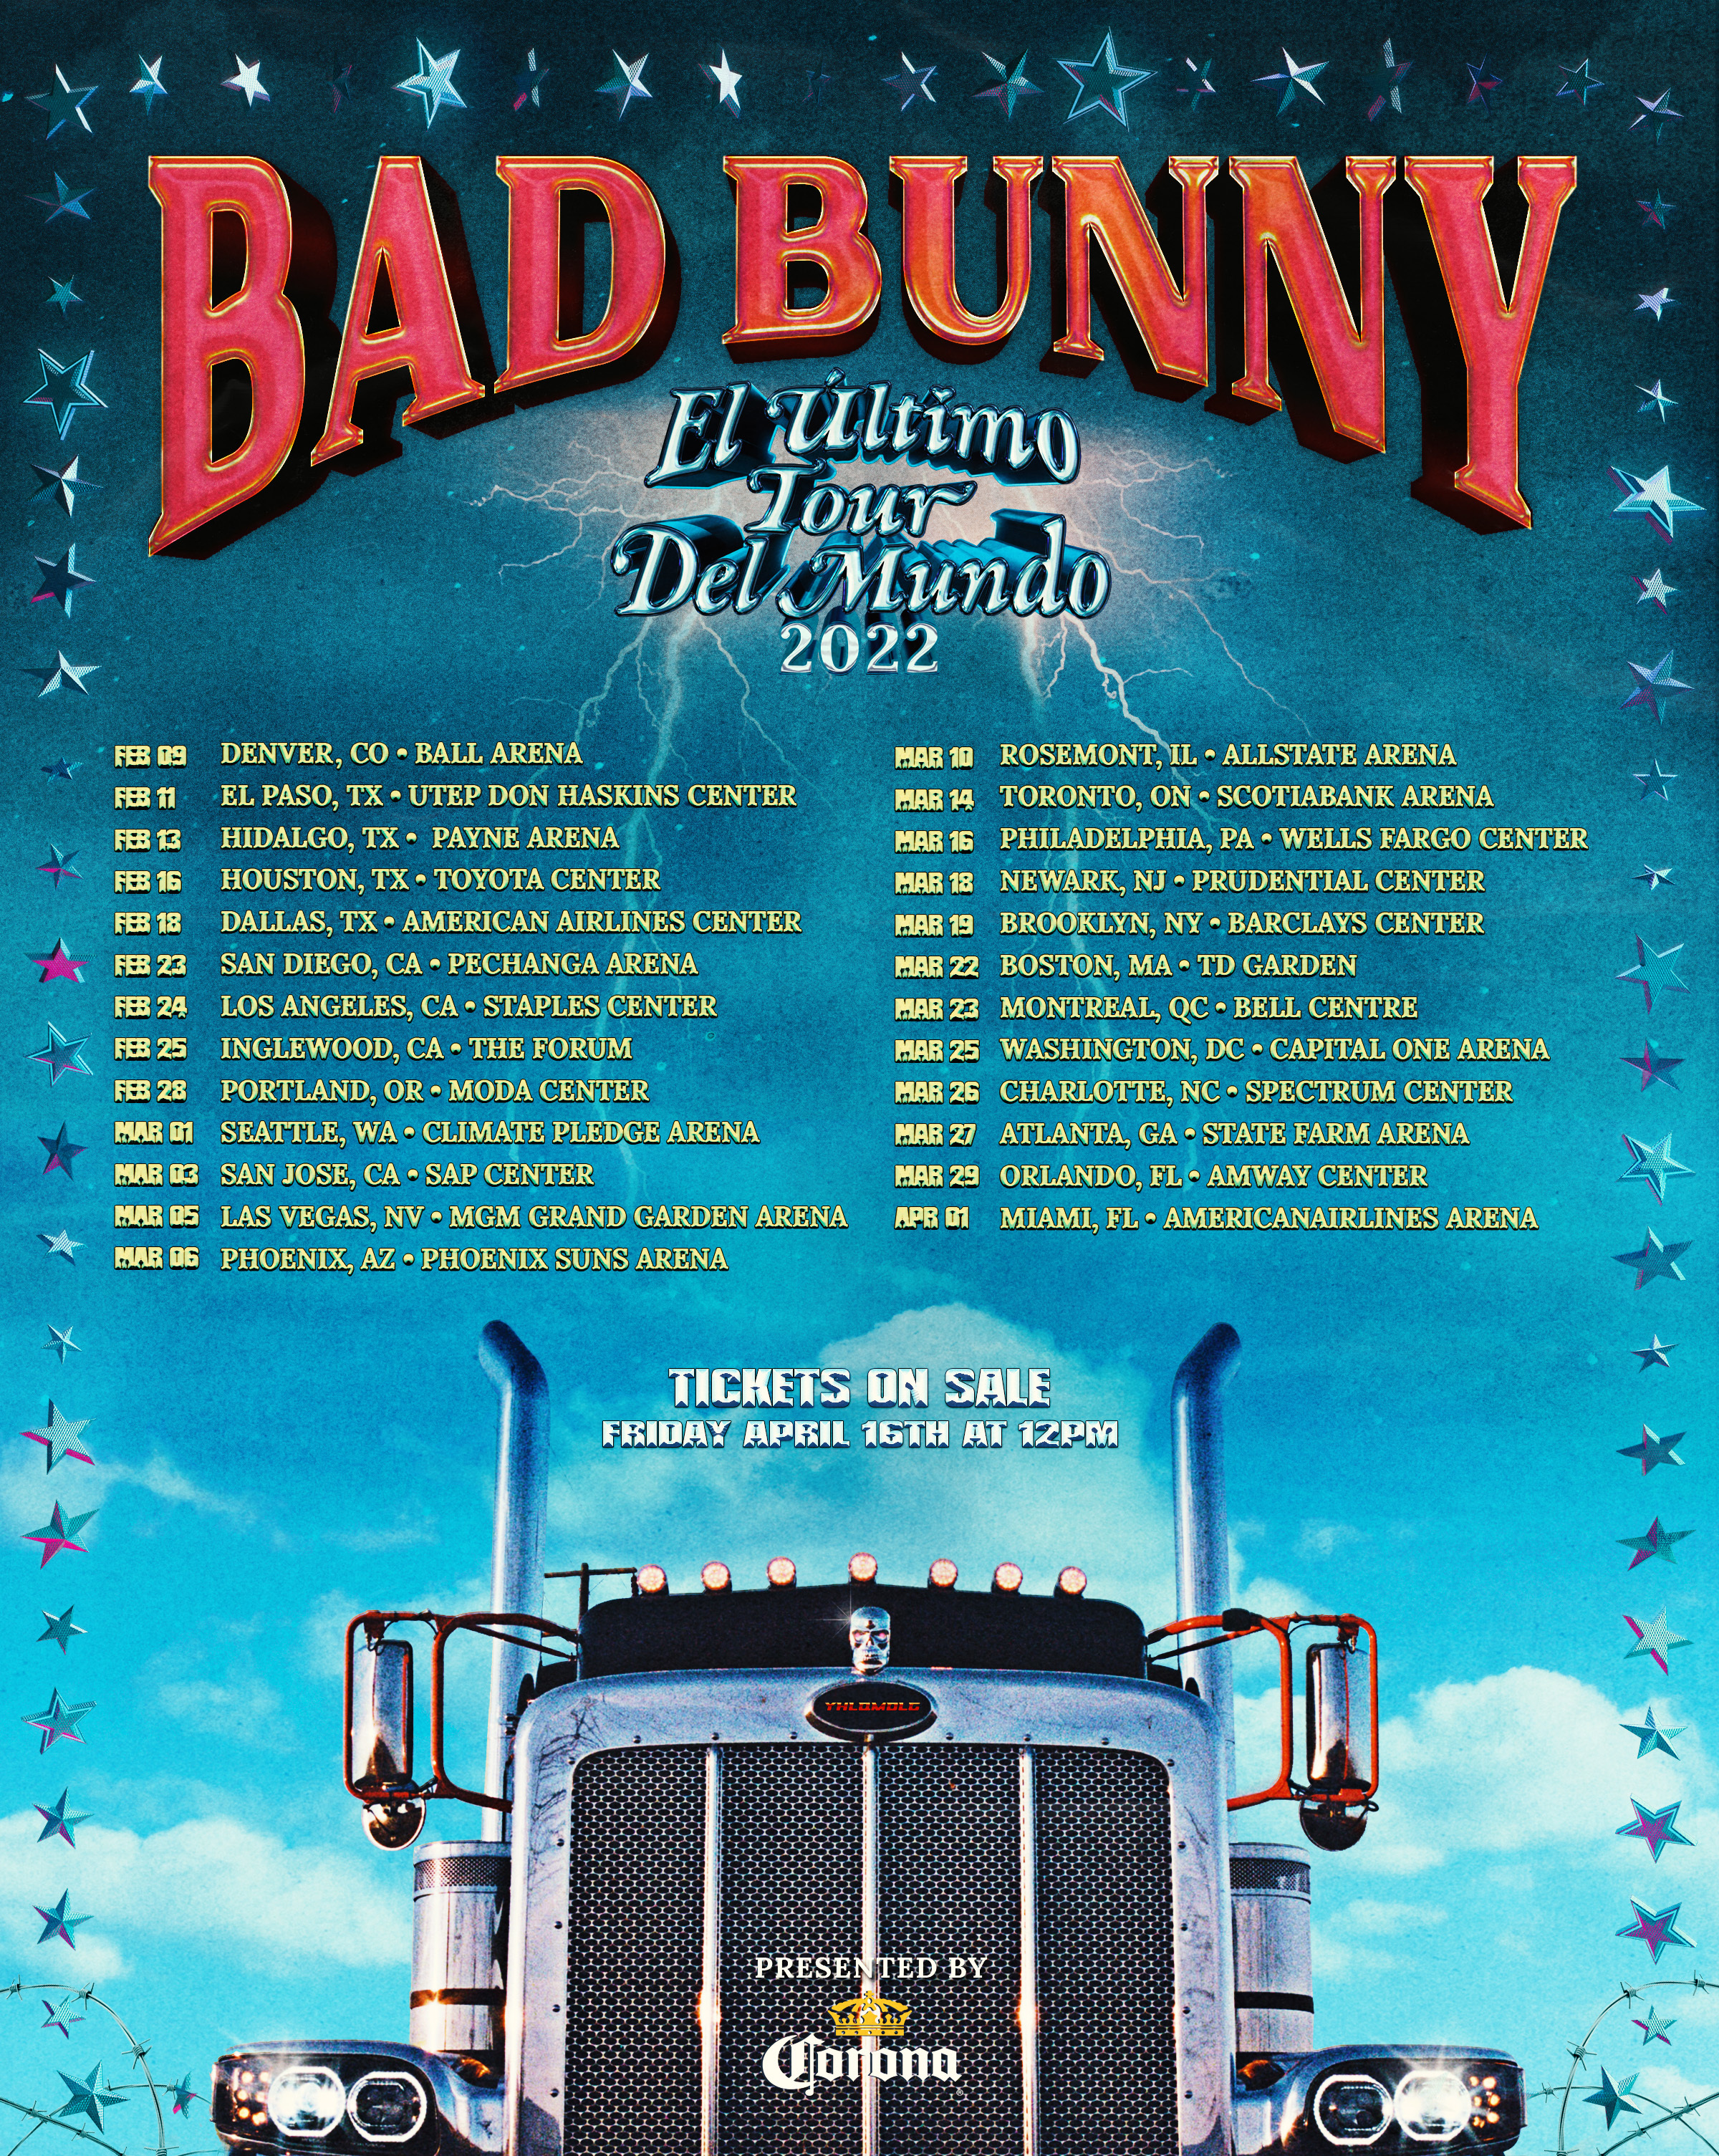 BAD BUNNY anuncia su tan esperado tour “El Último Tour Del Mundo 2022”